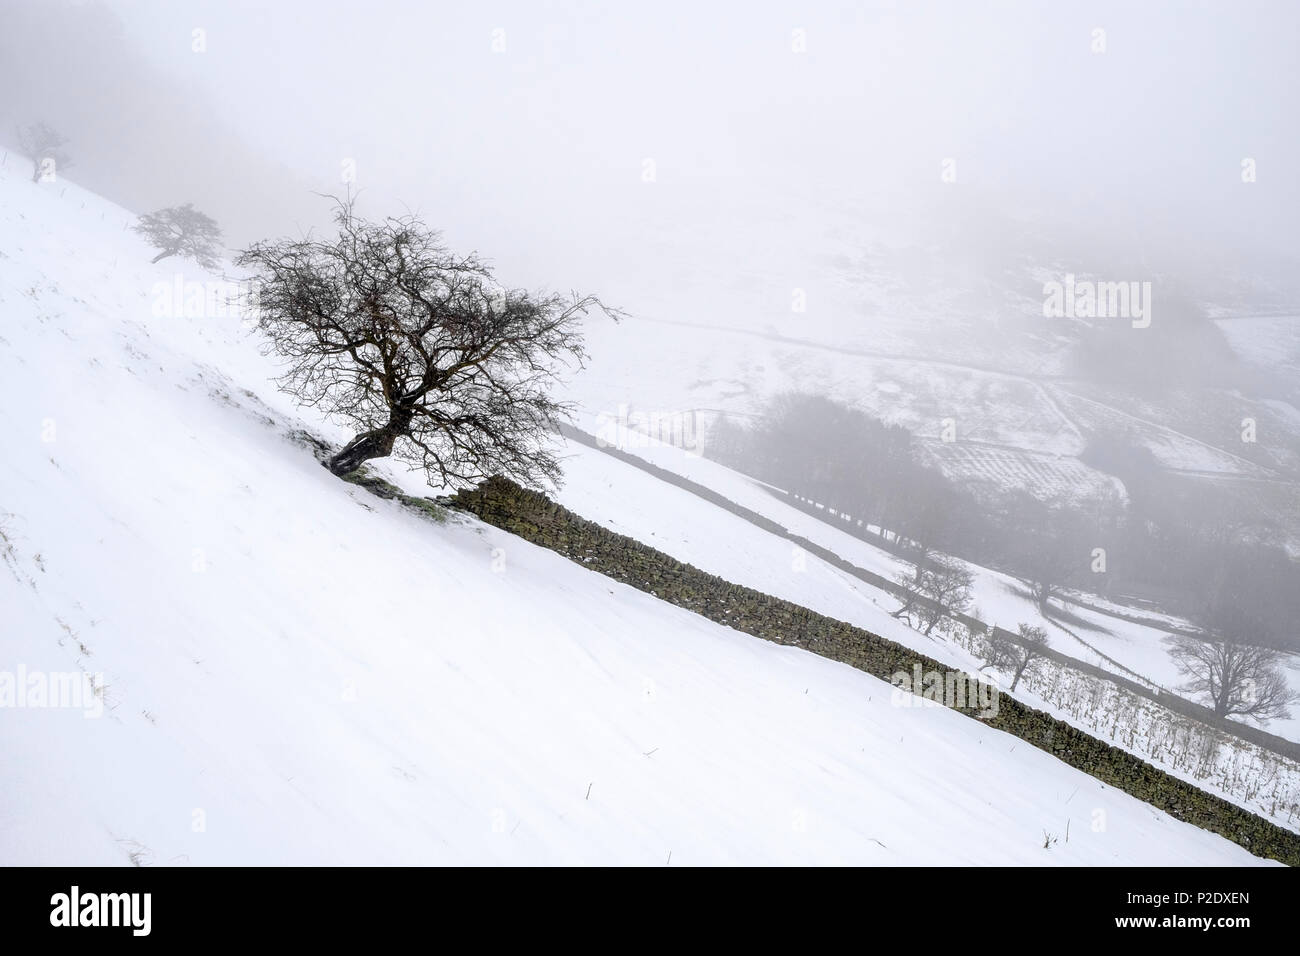 Paesaggio invernale. La caduta della neve sulle colline del Peak District campagna. Snowy scena a Banca Broadlee Tor, vale di Edale, Derbyshire, England, Regno Unito Foto Stock